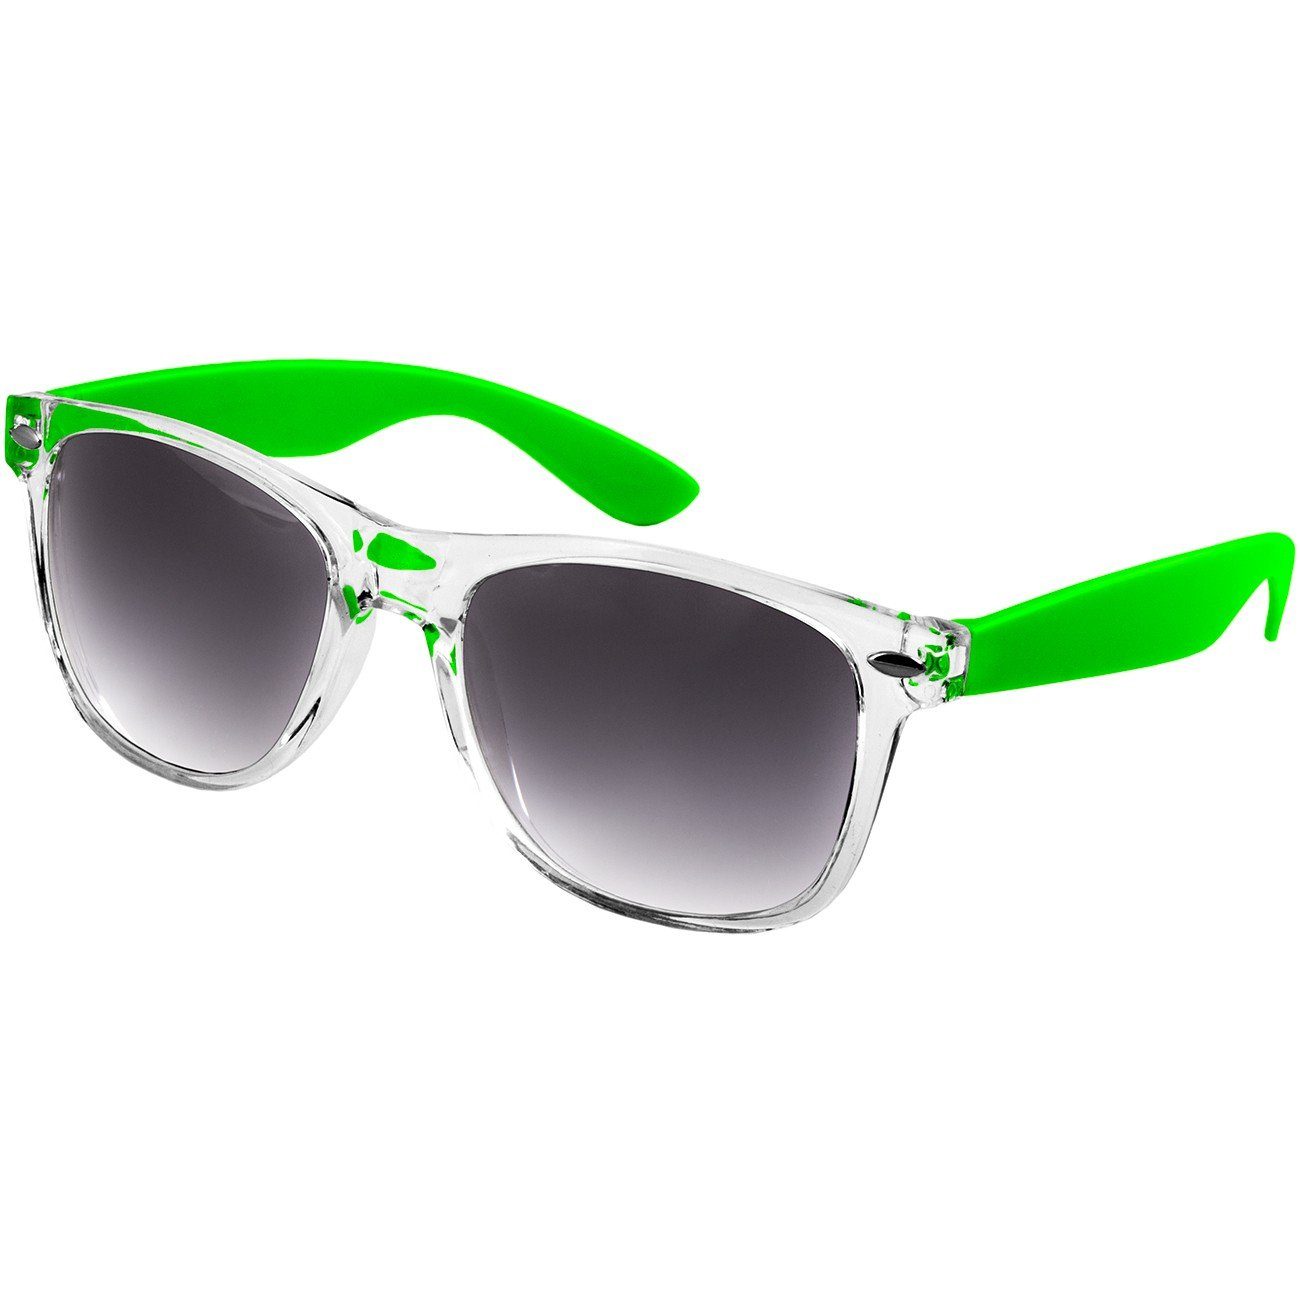 SG017 RETRO Designbrille schwarz Caspar getönt / Damen Sonnenbrille grün